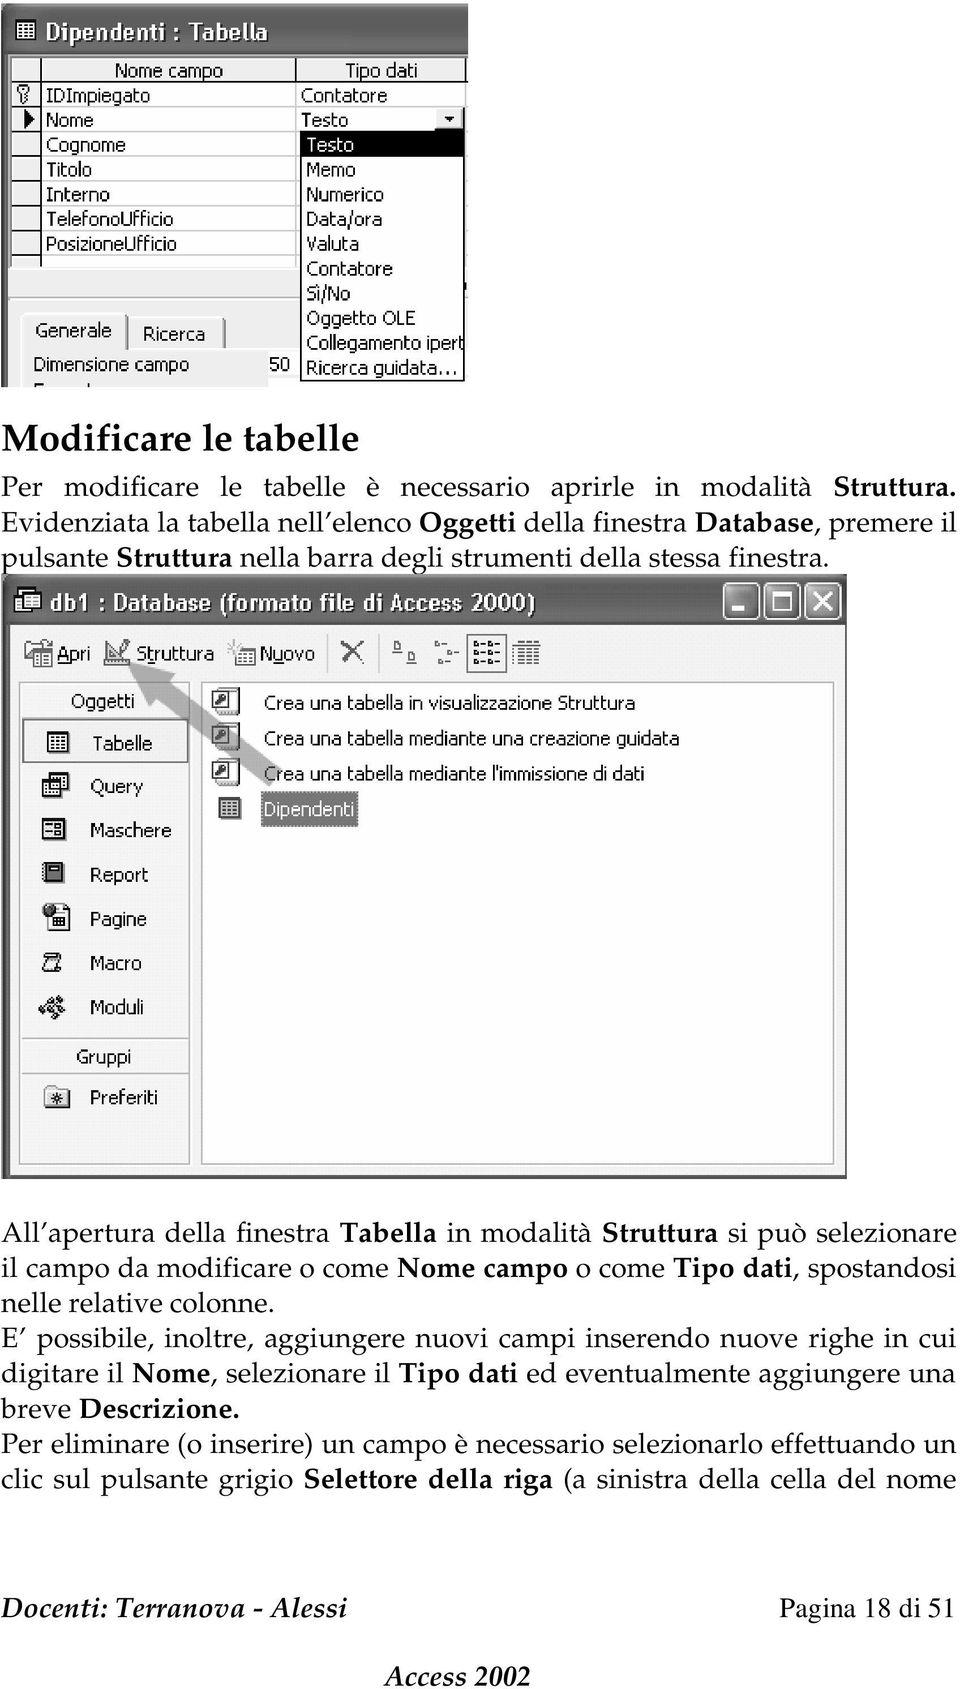 All apertura della finestra Tabella in modalità Struttura si può selezionare il campo da modificare o come Nome campo o come Tipo dati, spostandosi nelle relative colonne.